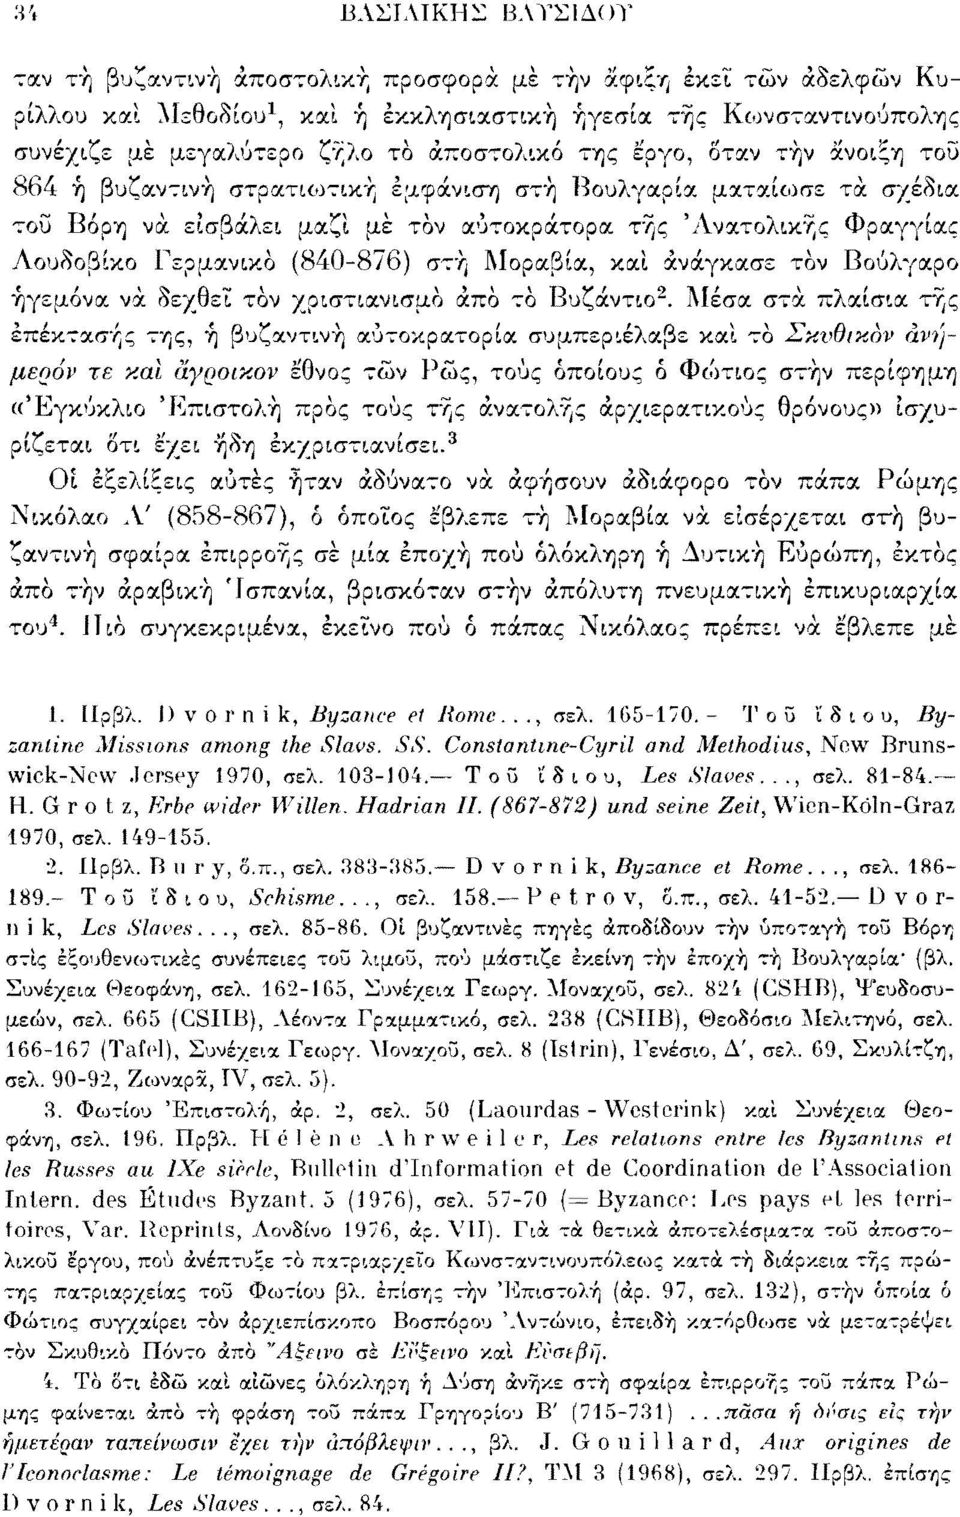 Γερμανικό (840-876) στή Μοραβία, καί ανάγκασε τον Βούλγαρο ηγεμόνα να δεχθεί τον χριστιανισμό άπο το Βυζάντιο 2.